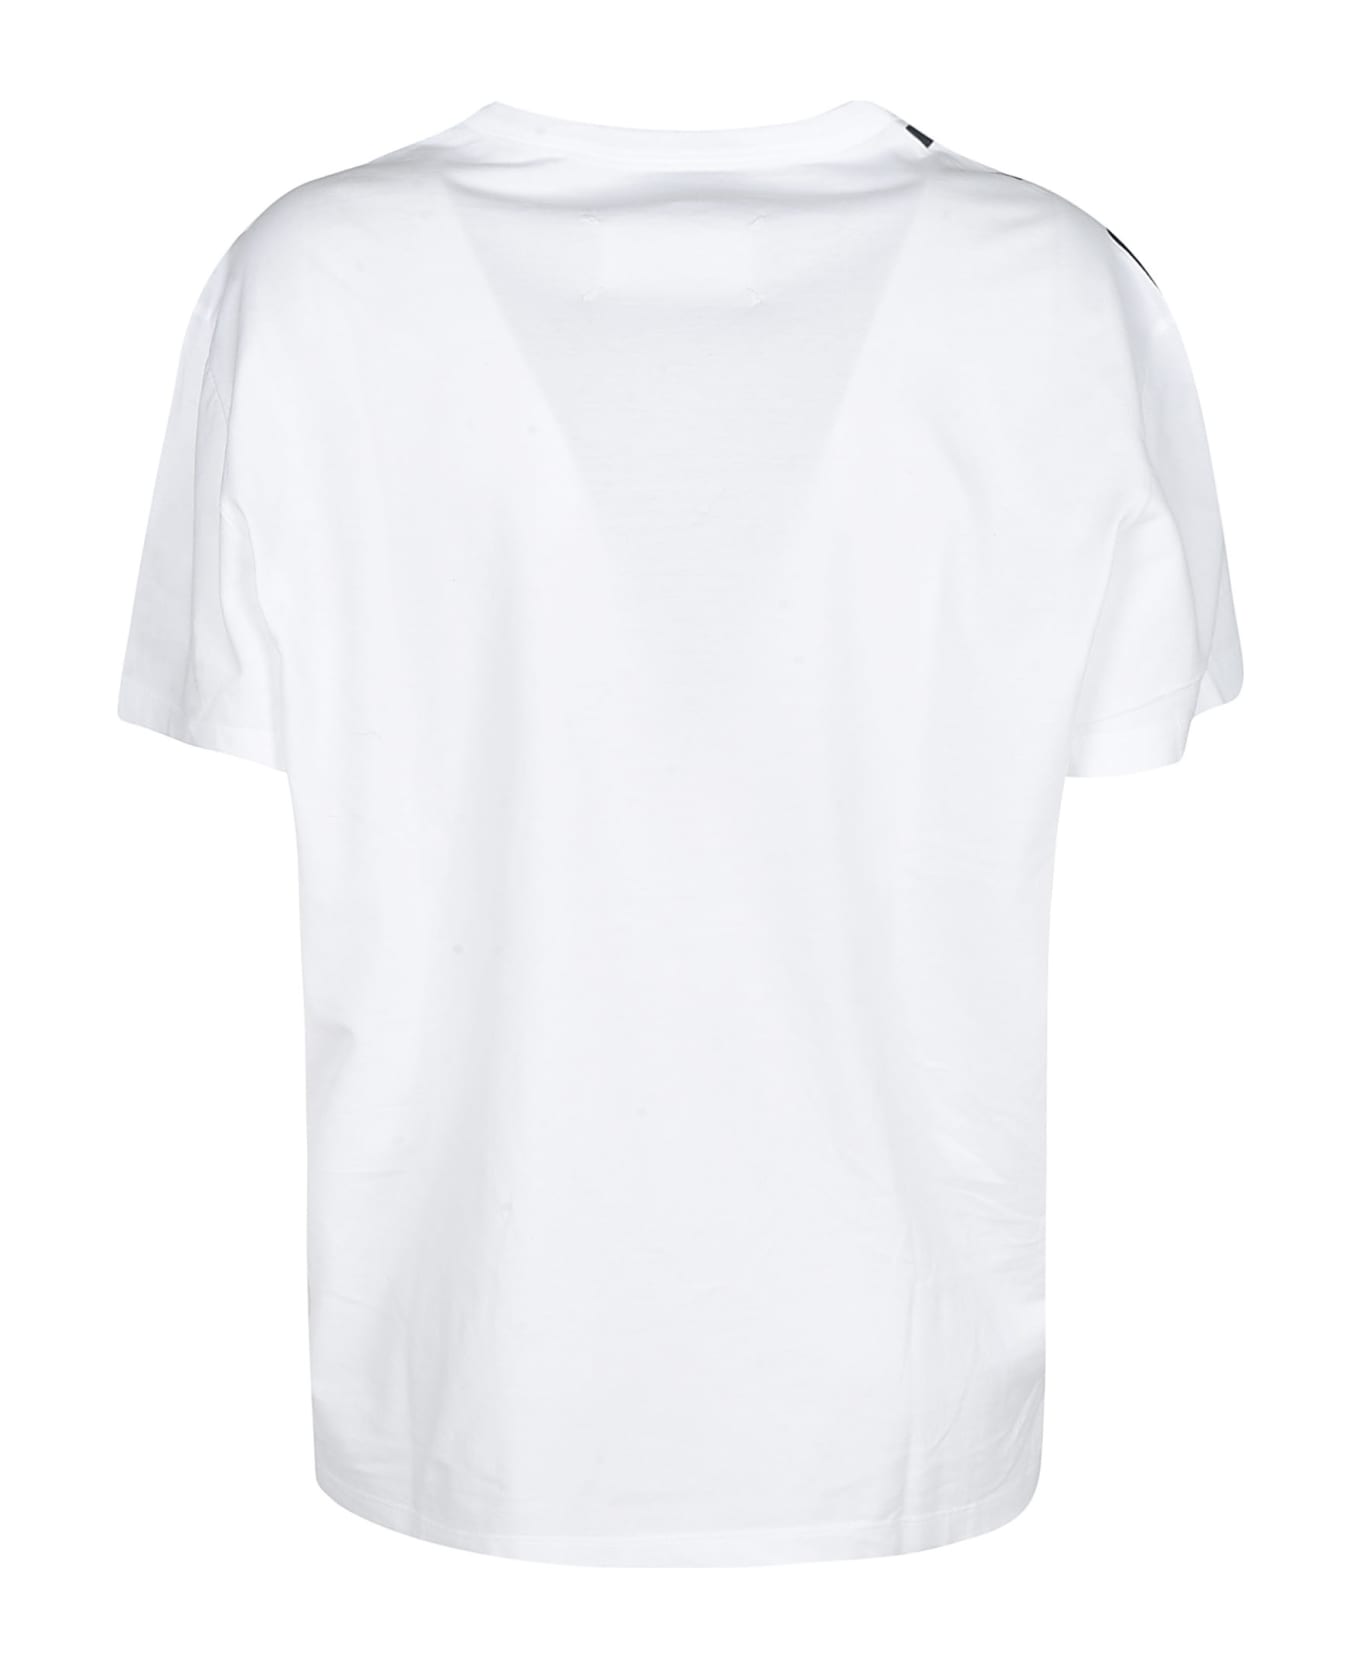 Maison Margiela Printed T-shirt - White/Black Tシャツ